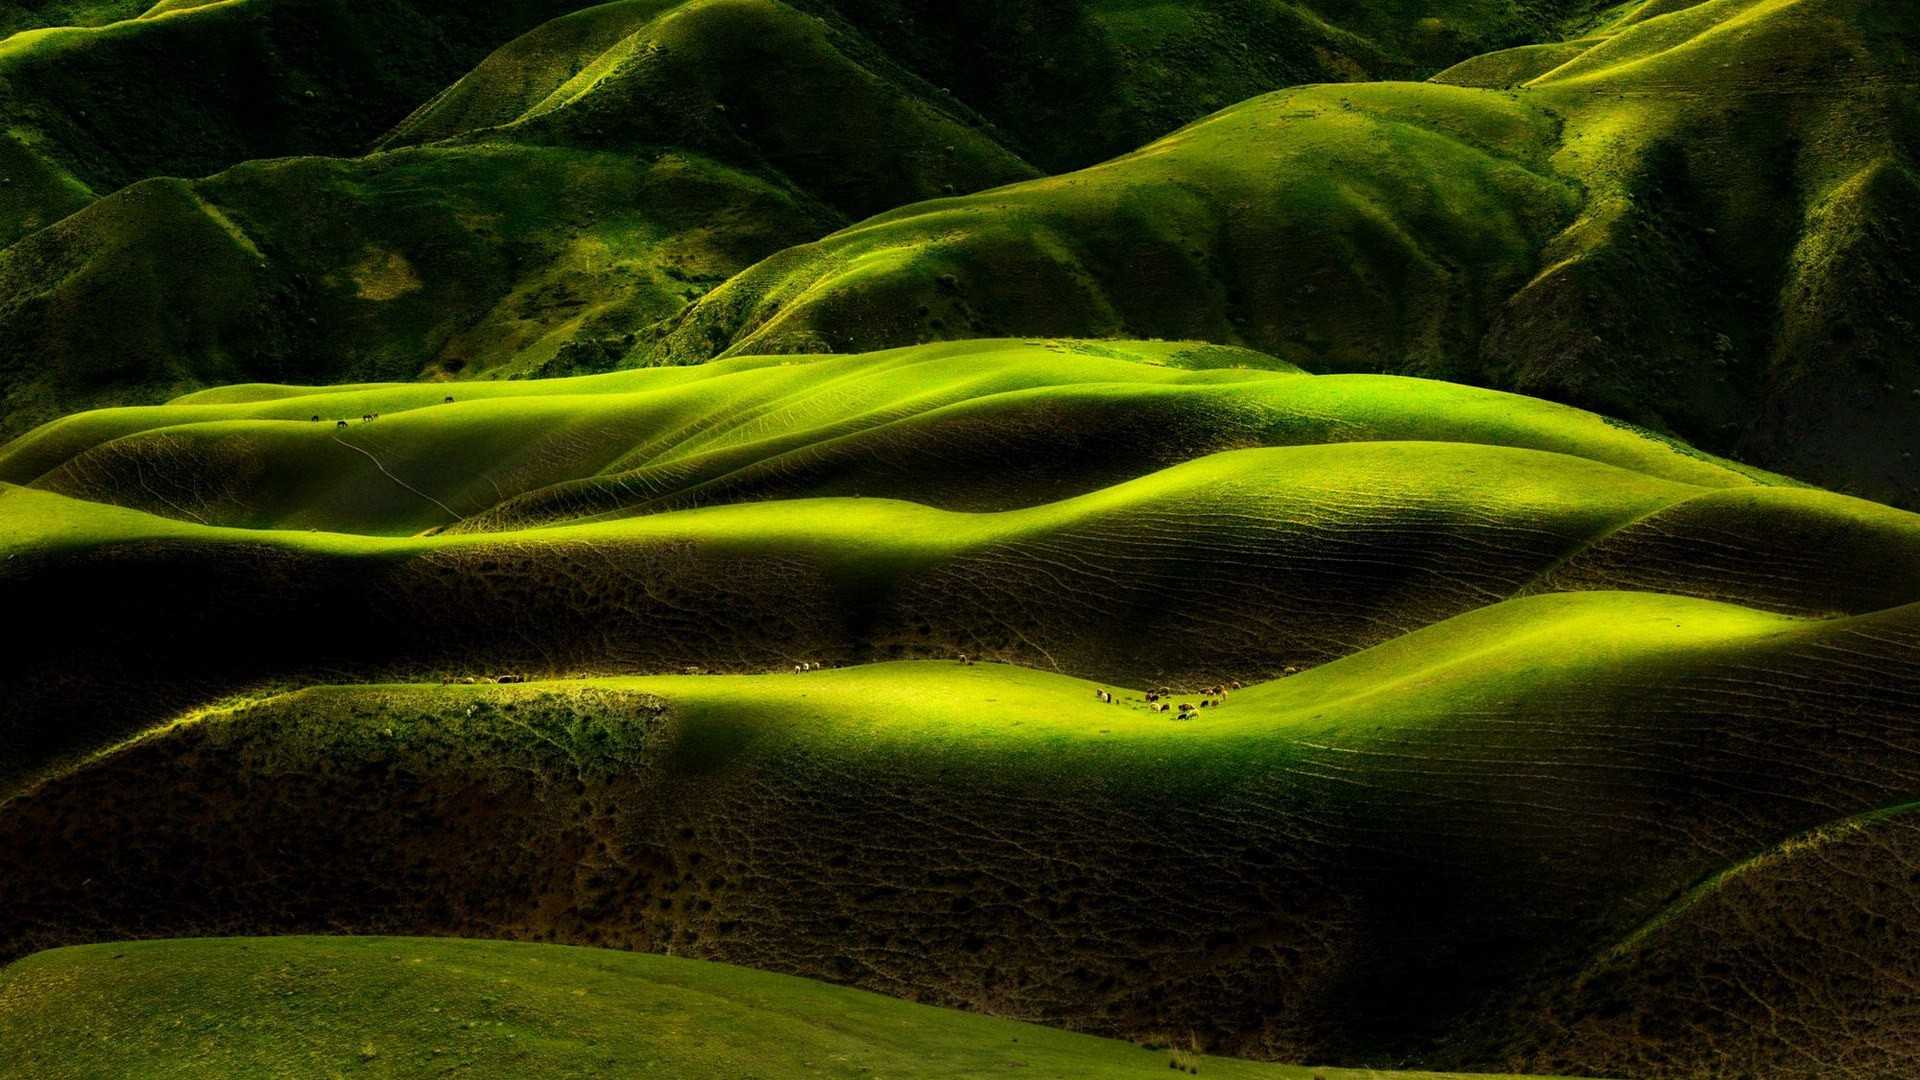 雨洗后的草原 新疆天山风景图片(2)